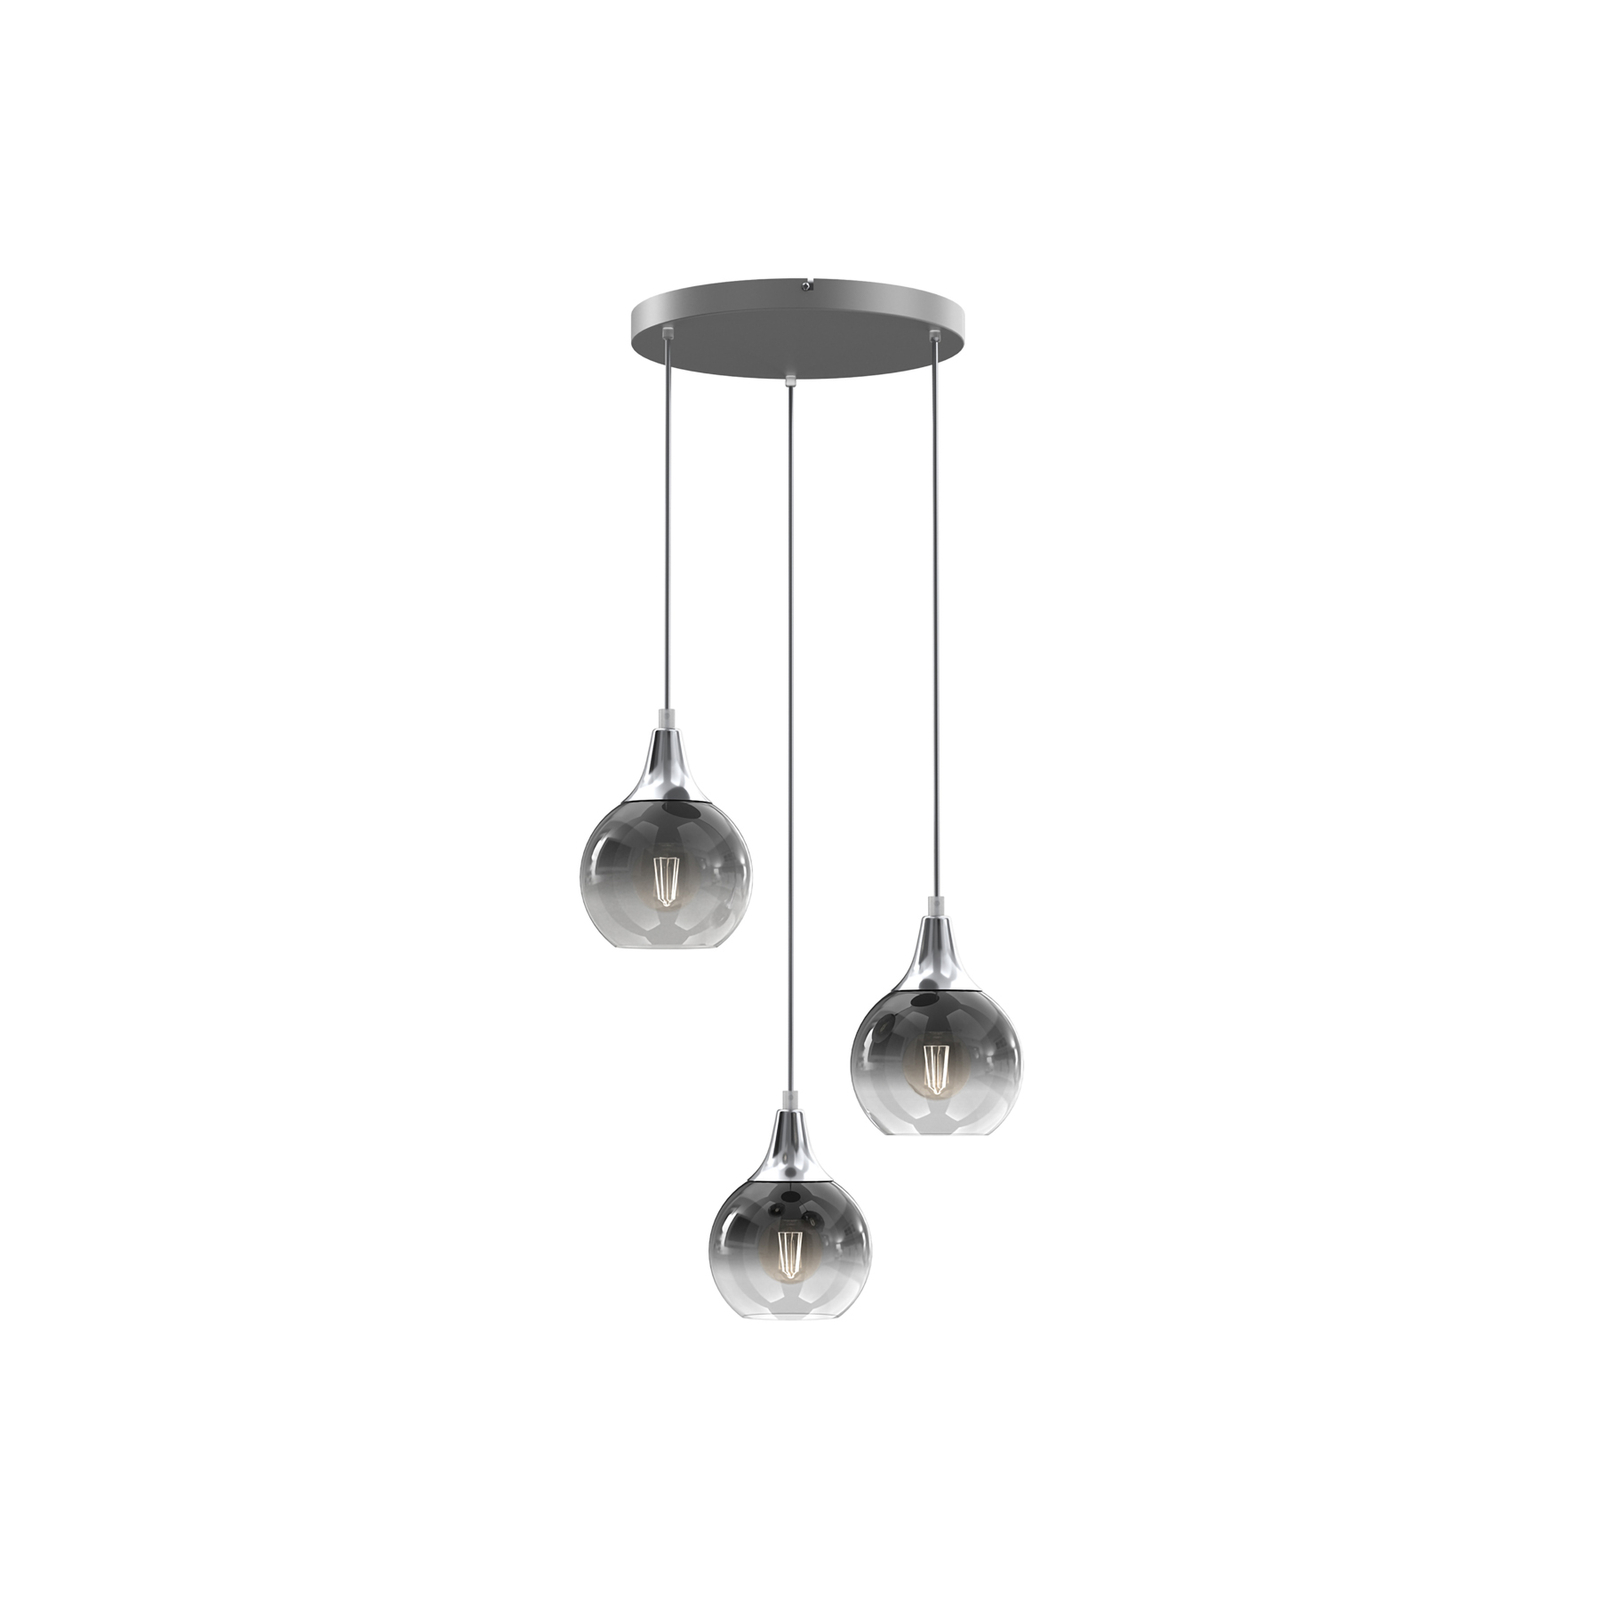 Hanglamp Monte, 3-lamps, rondel, zilver